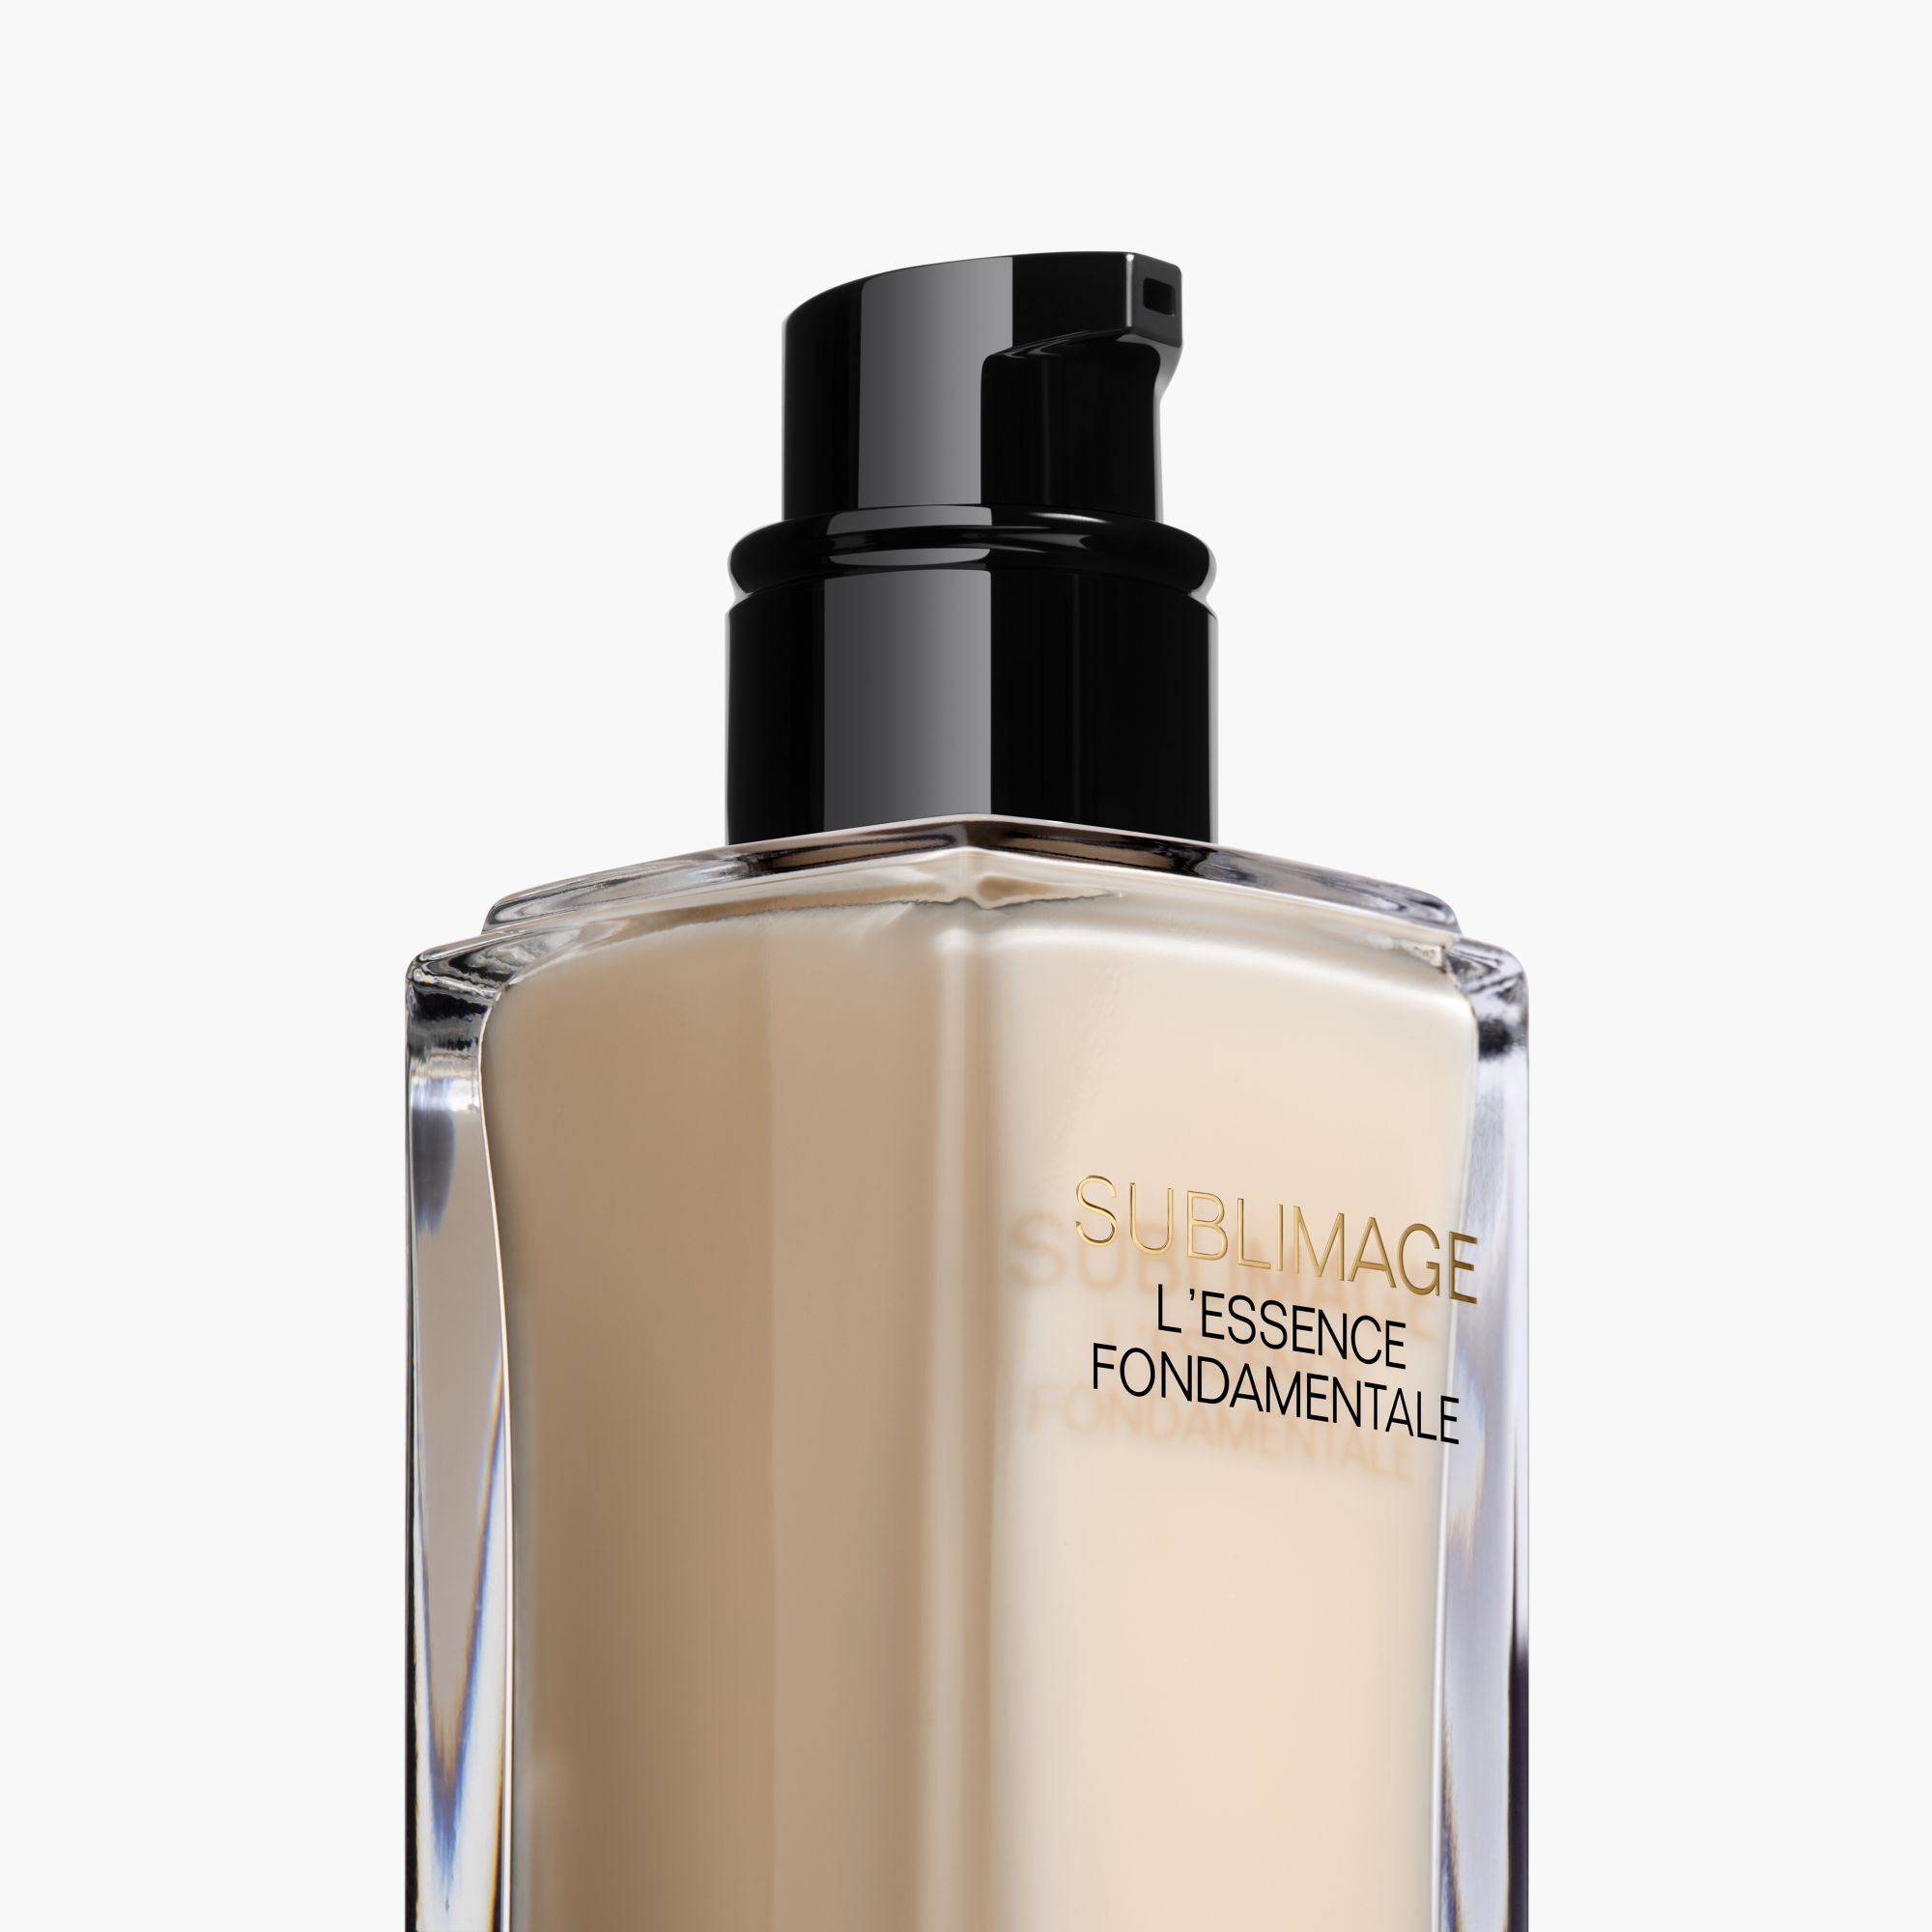 Chanel Review > Sublimage L'Essence Fondamentale (Ultimate